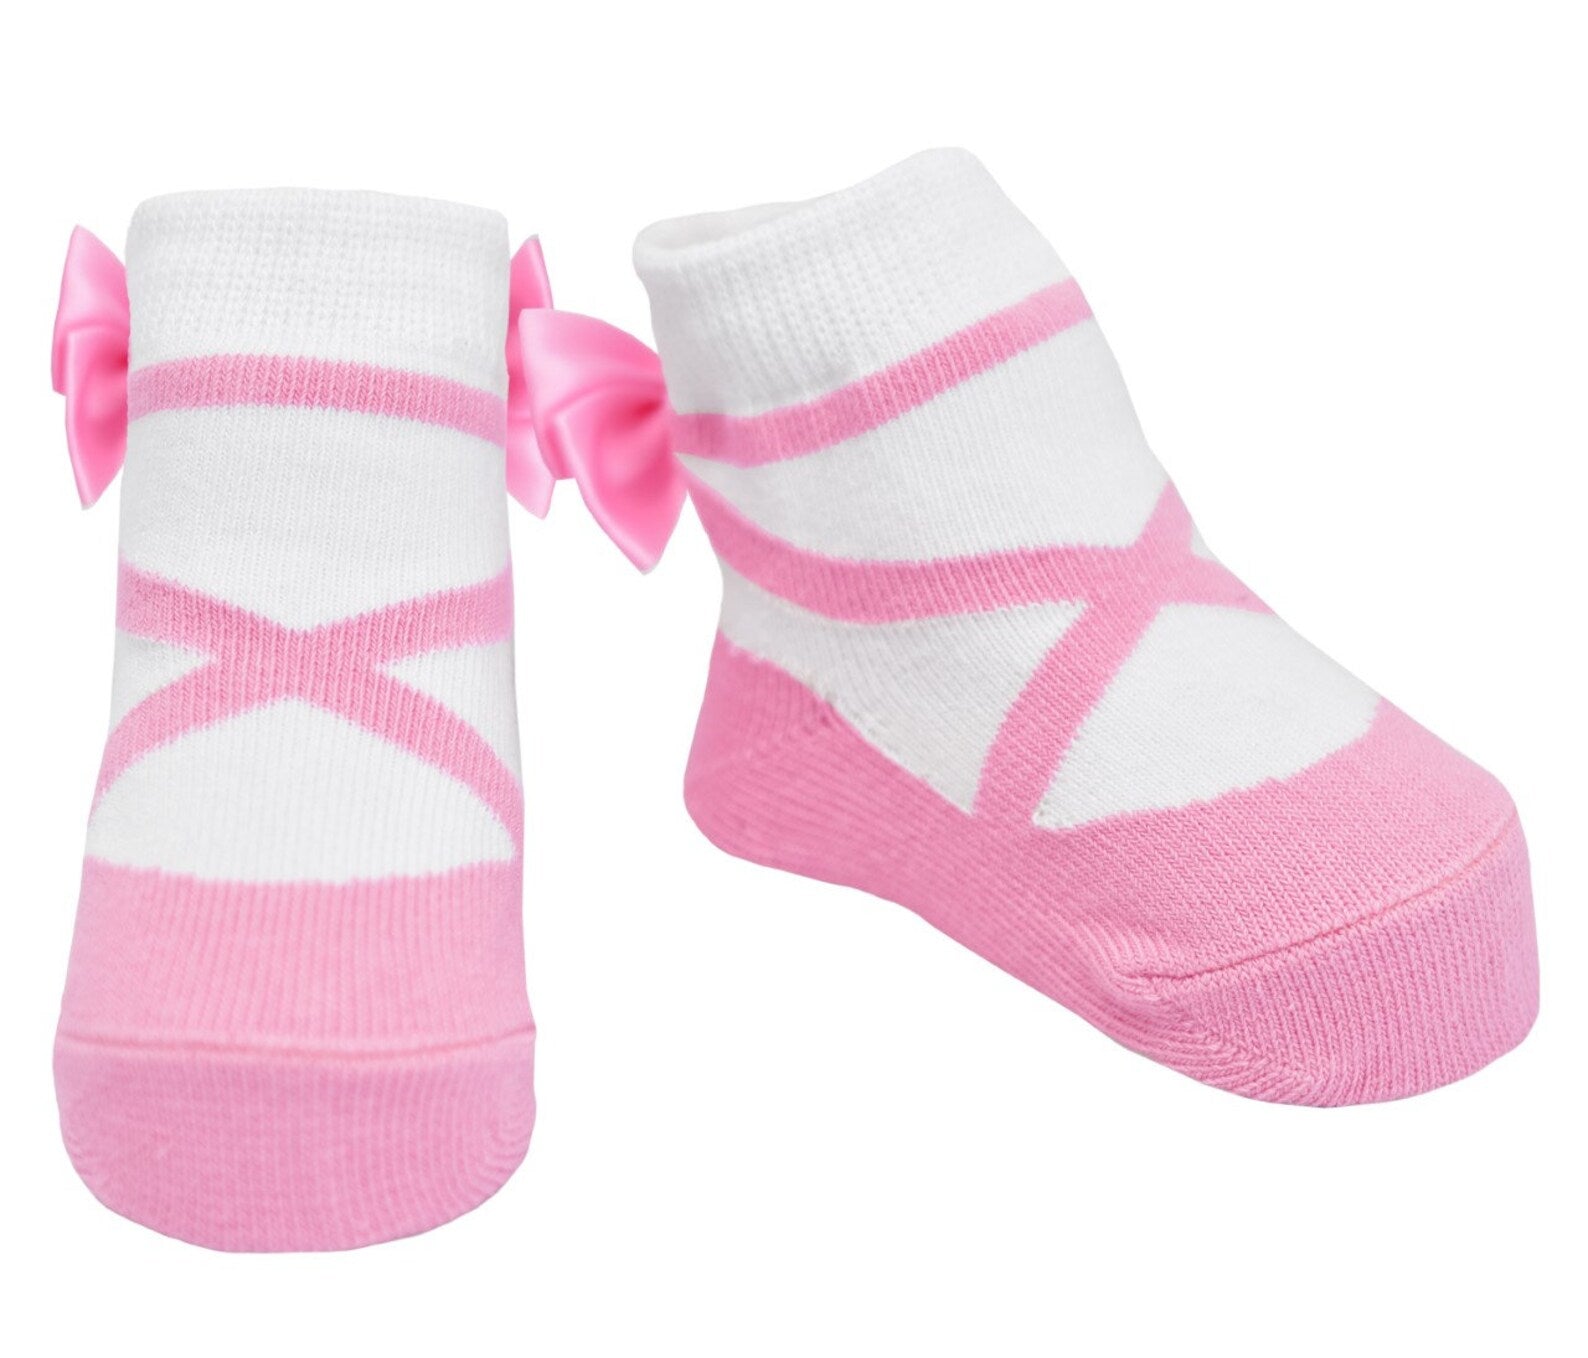 Ballerina shoe look socks by Baby Emporio in pink